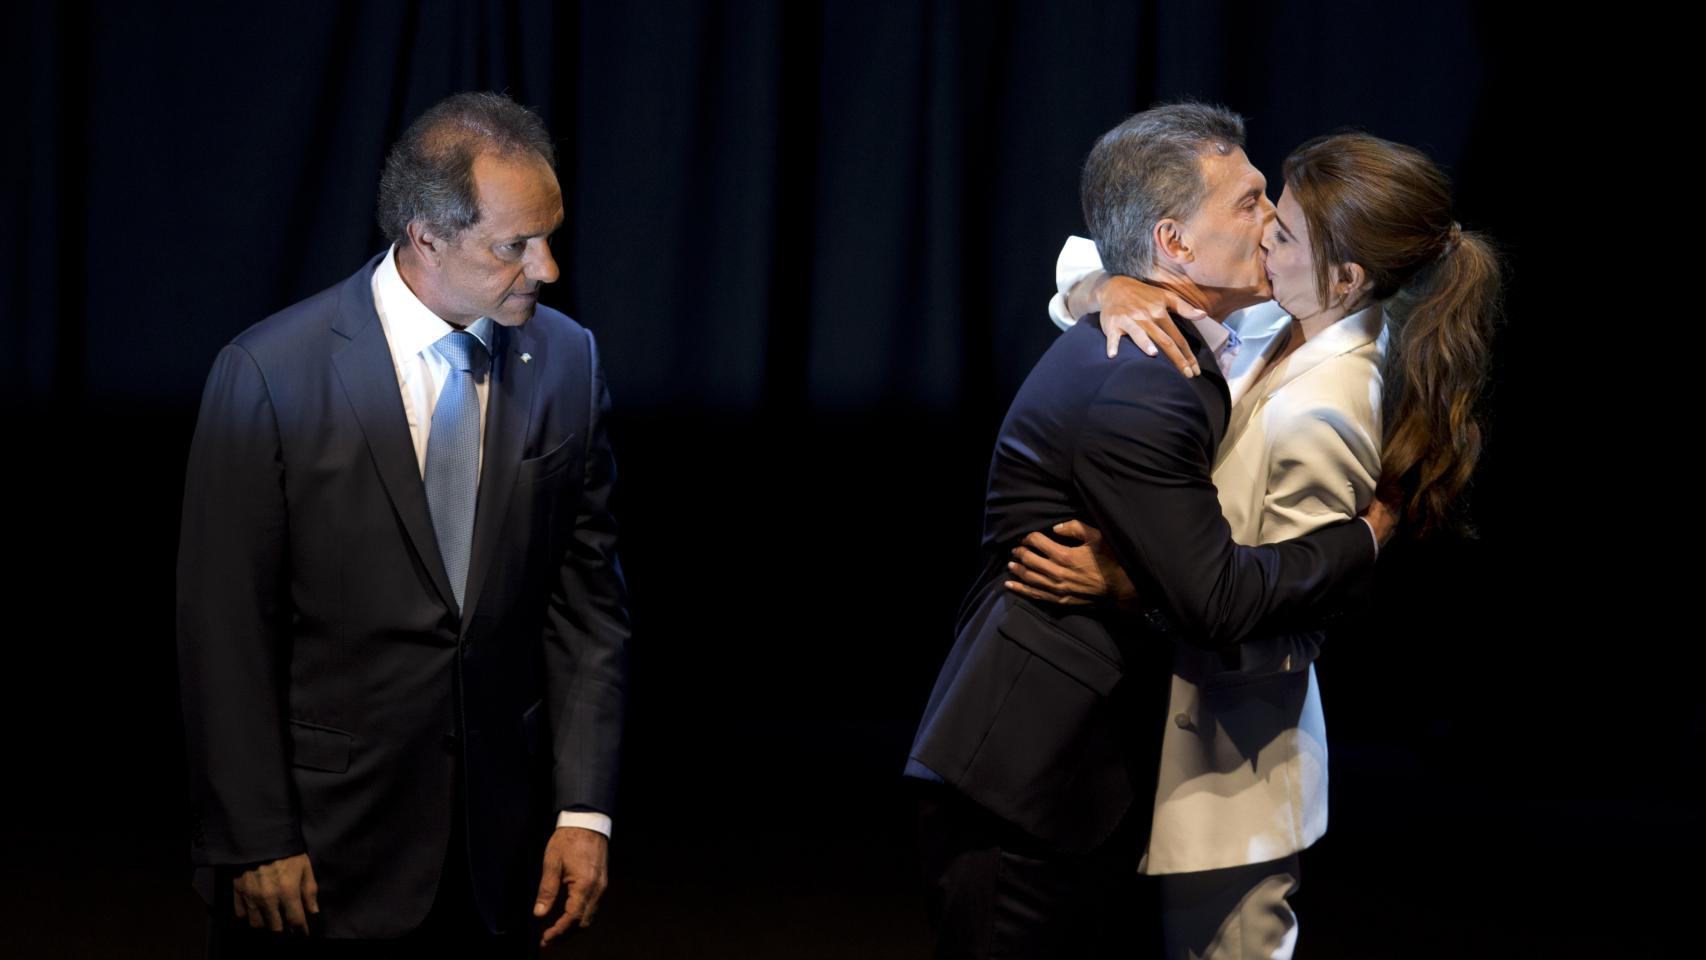 El famoso beso tras el debate presidencial fue el auténtico vencedor de las elecciones.